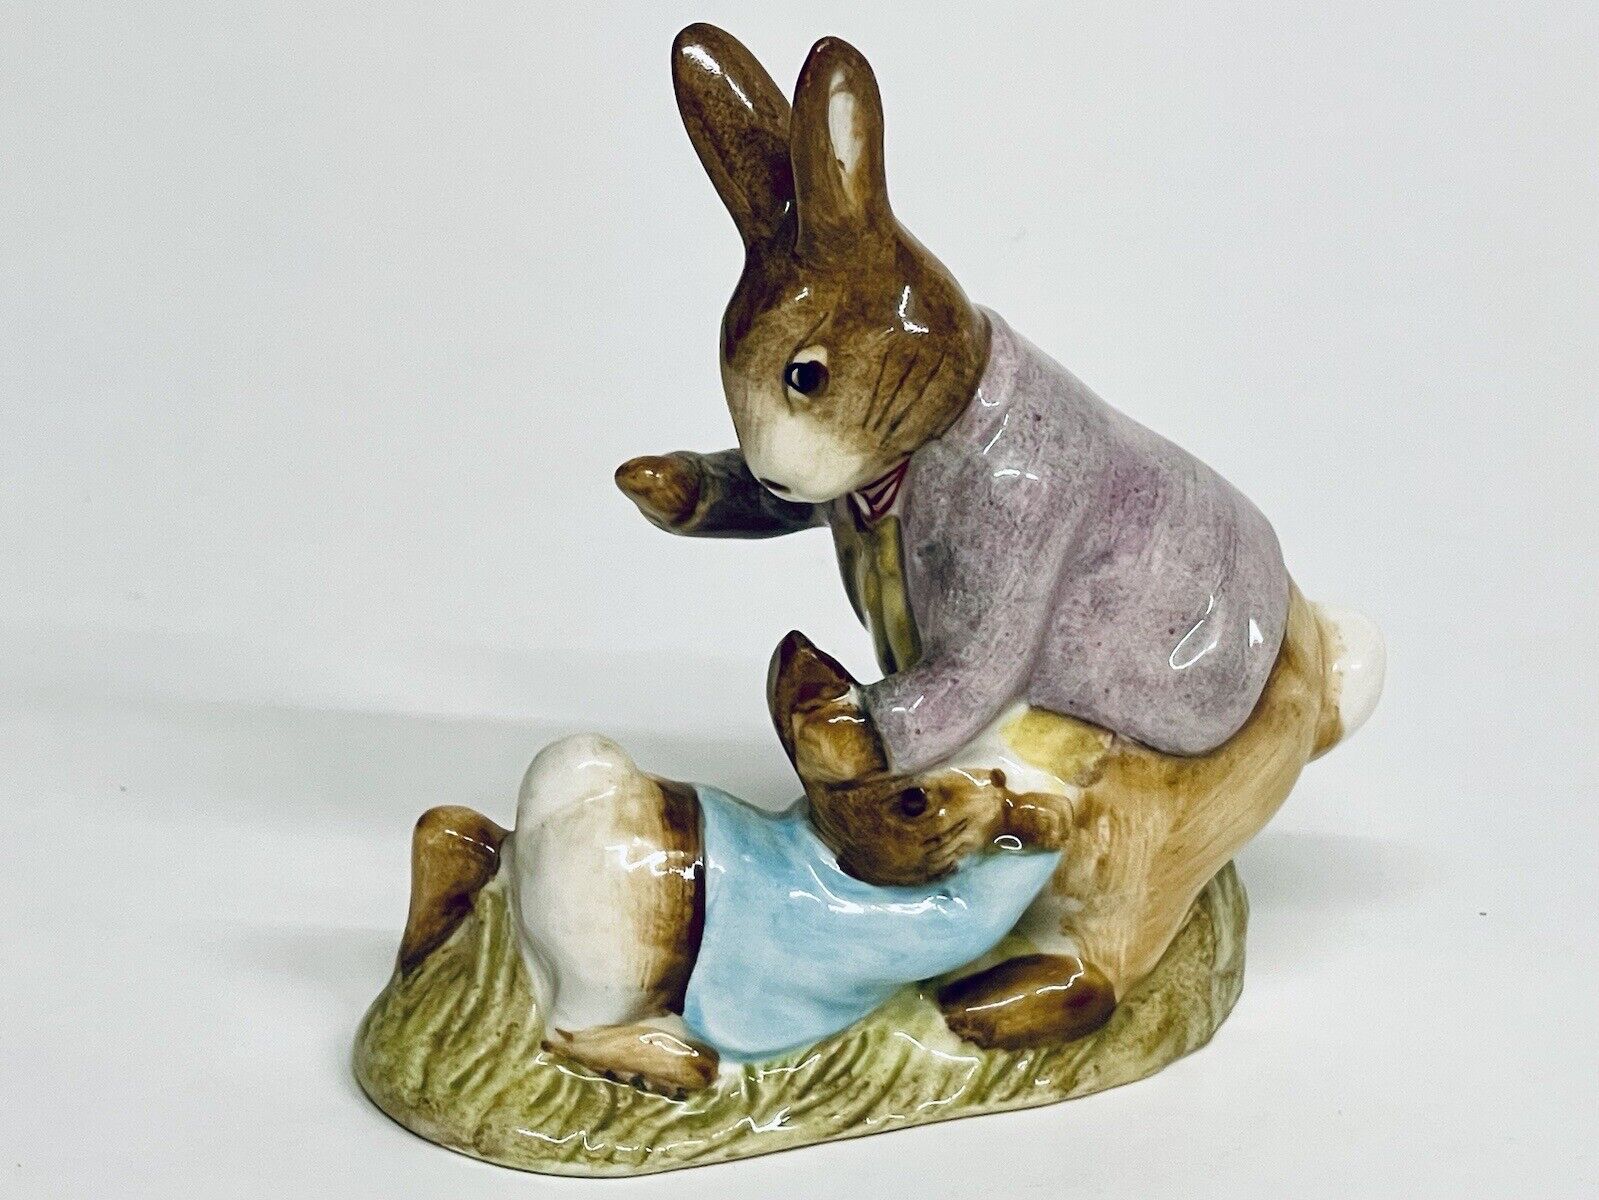 Marvelous Vintage 1975 Beatrix Potter Mr. Benjamin Bunny & Peter Rabbit